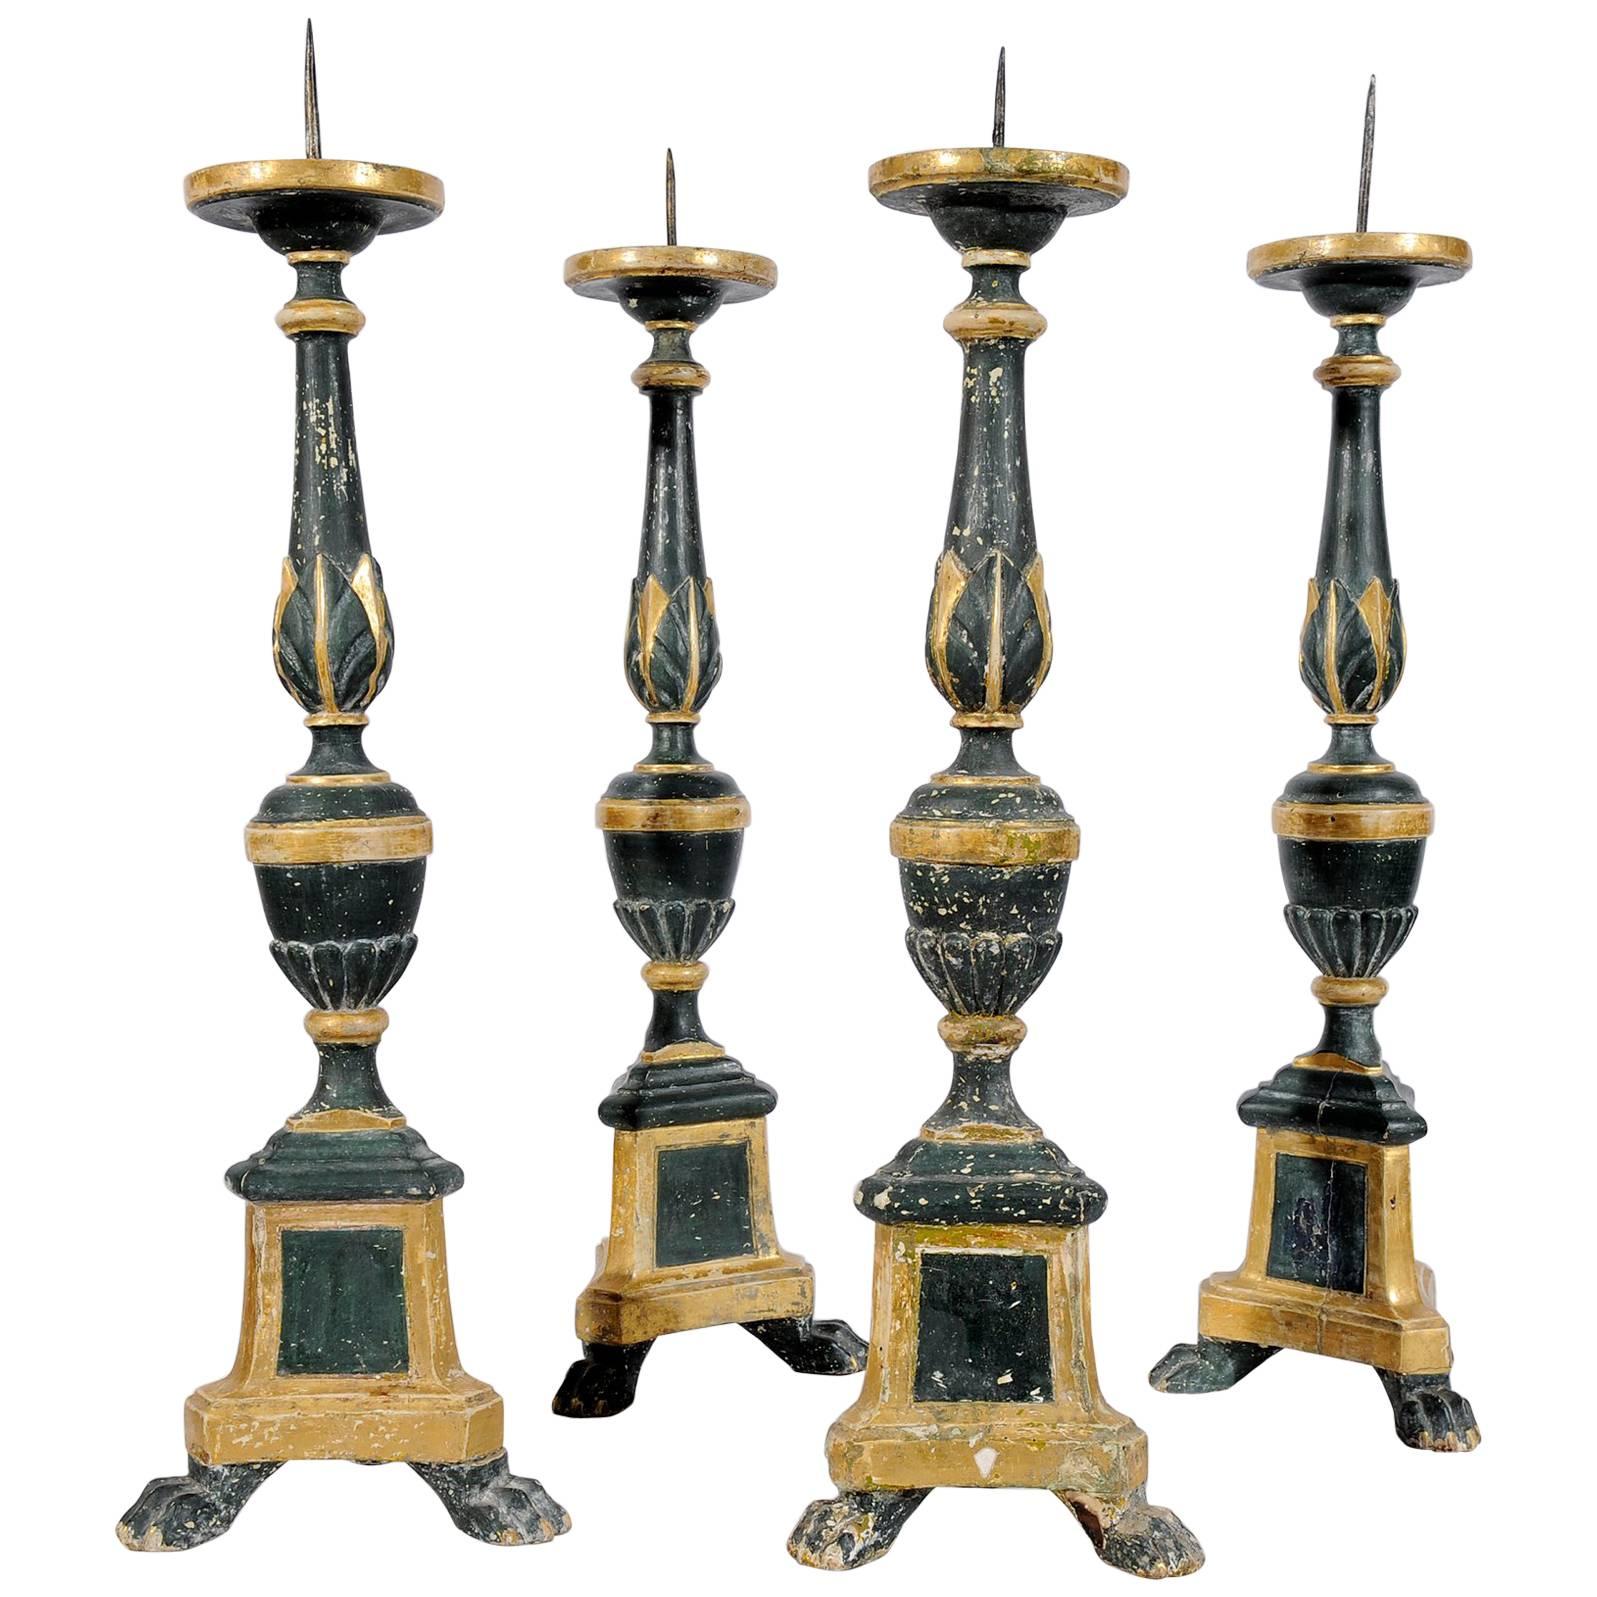 Tall Antique Italian Green Wooden Candlesticks